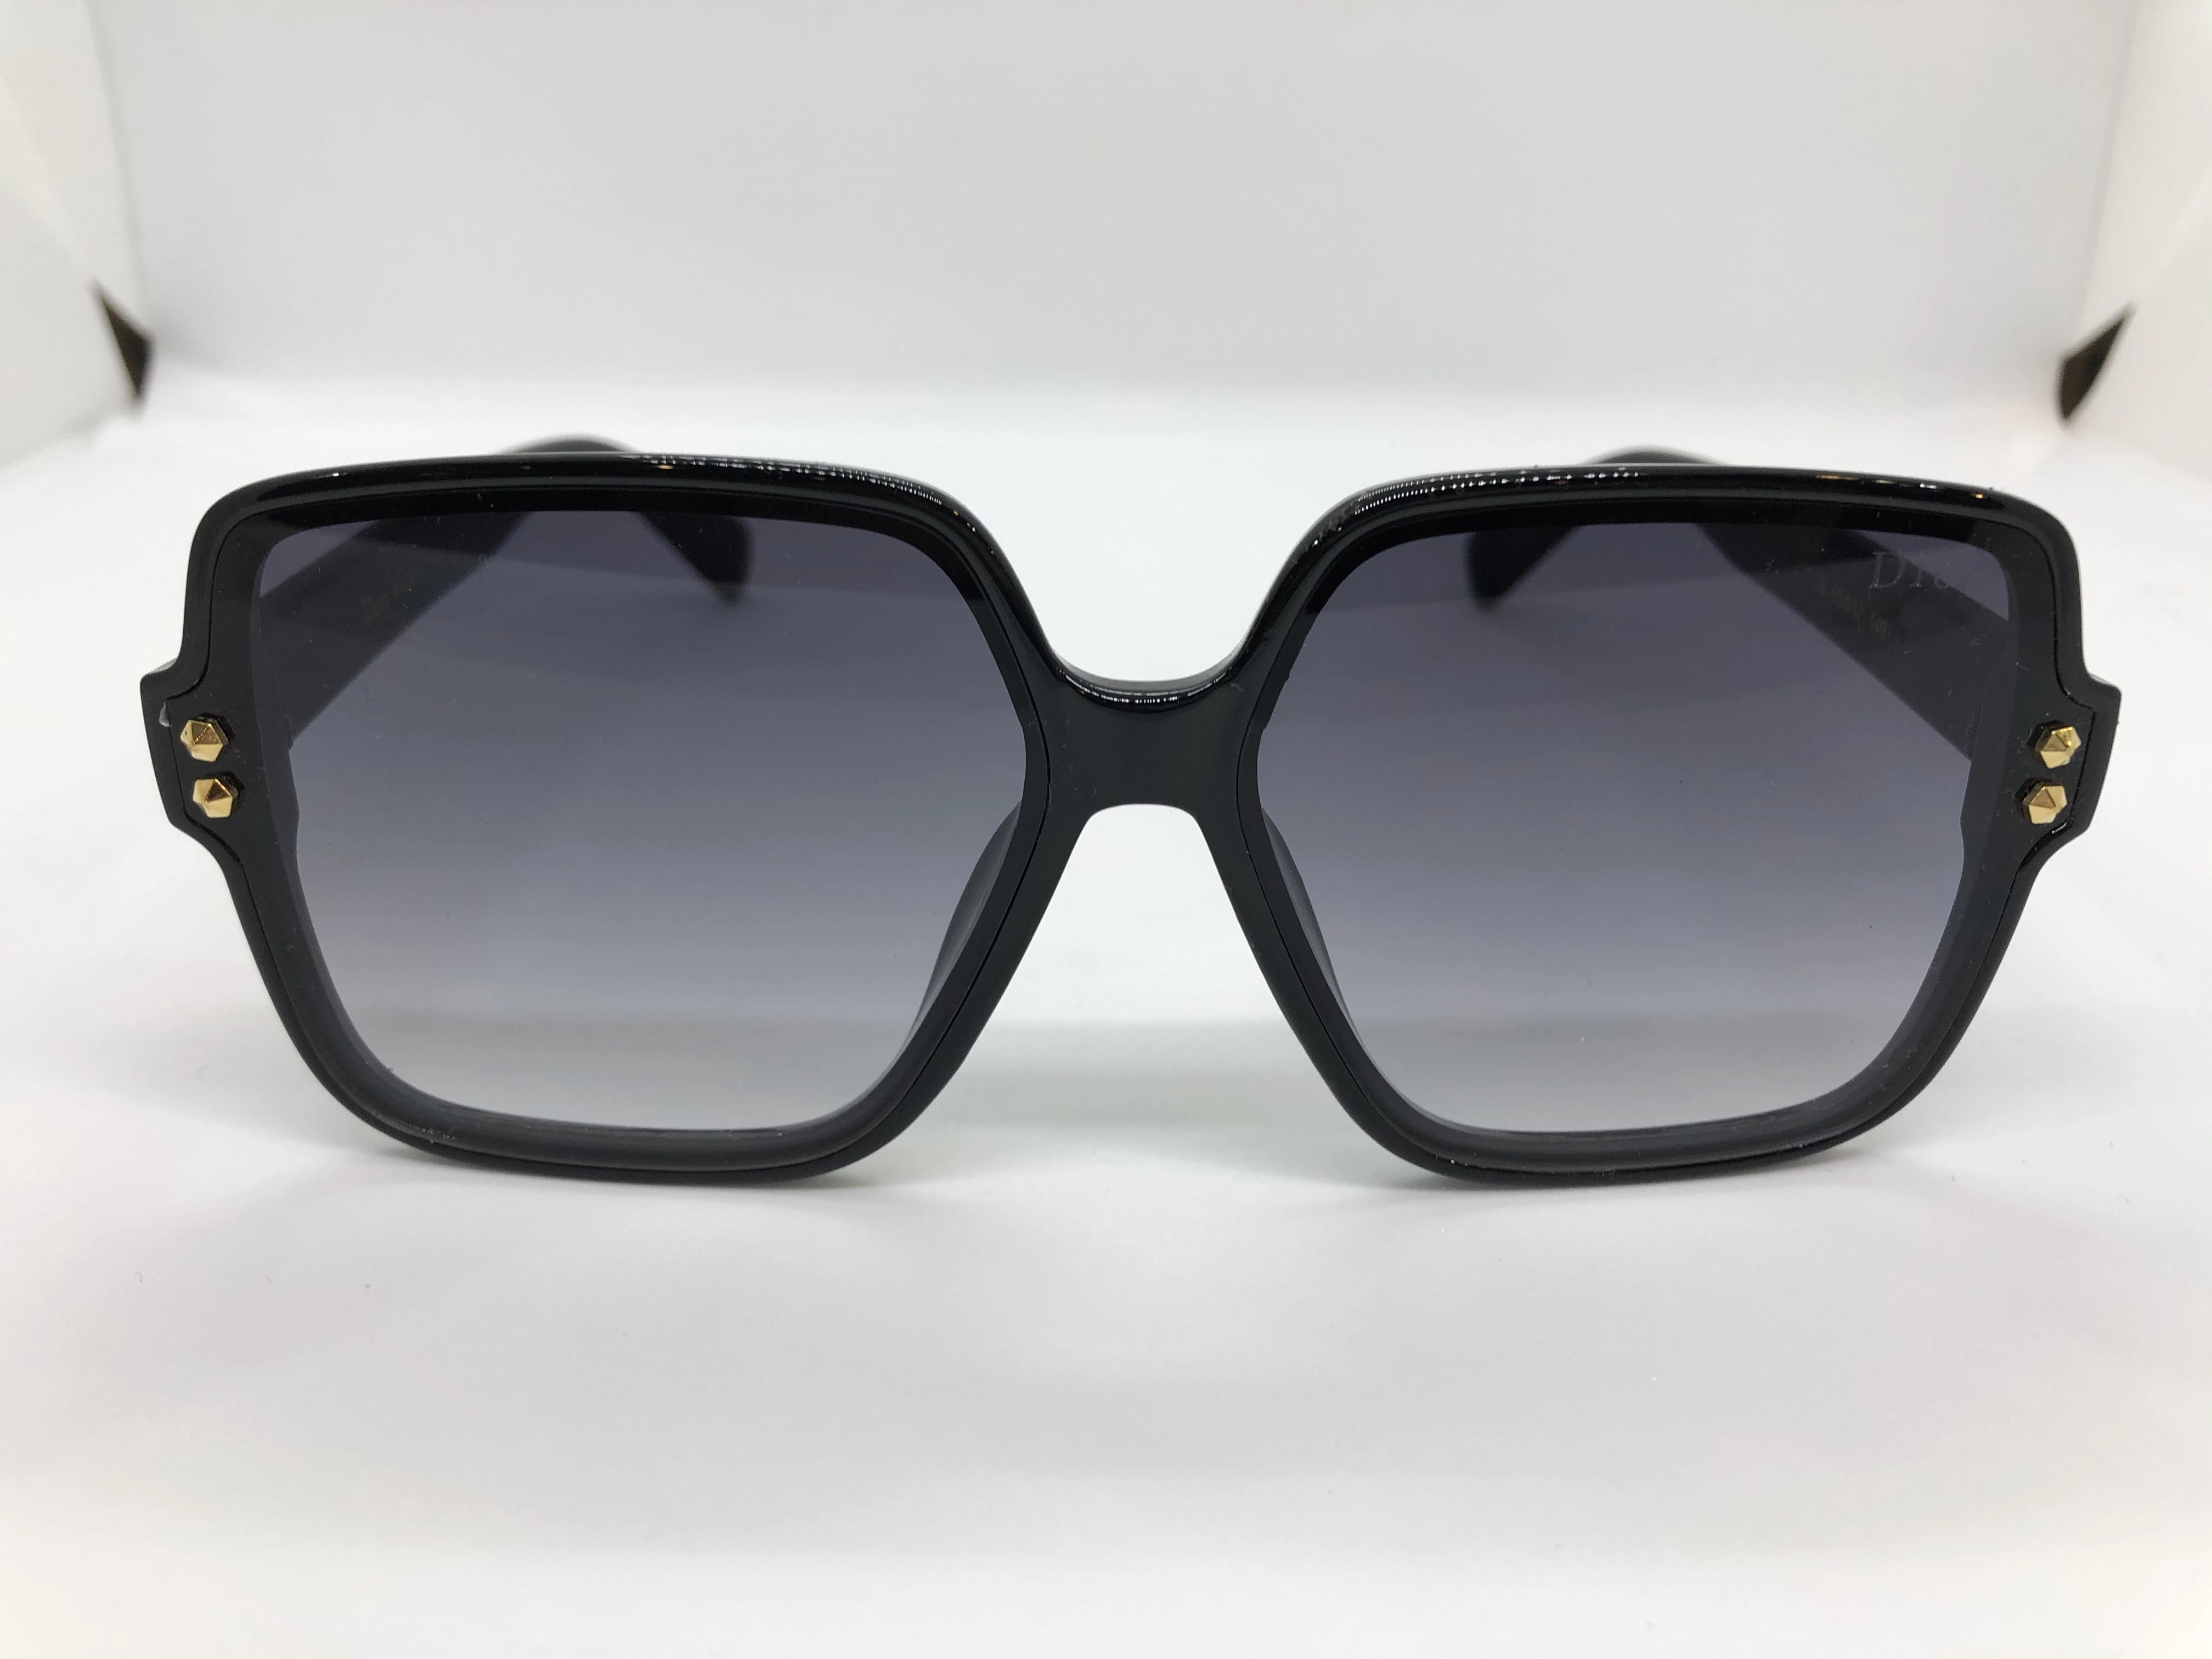 نظارة شمسية - من ديور- باطار اسود بولي كاربونات - وعدسات سوداء متدرجة - وزراع بولي كاربونات اسود - بشعار الماركة ابيض - حريمي